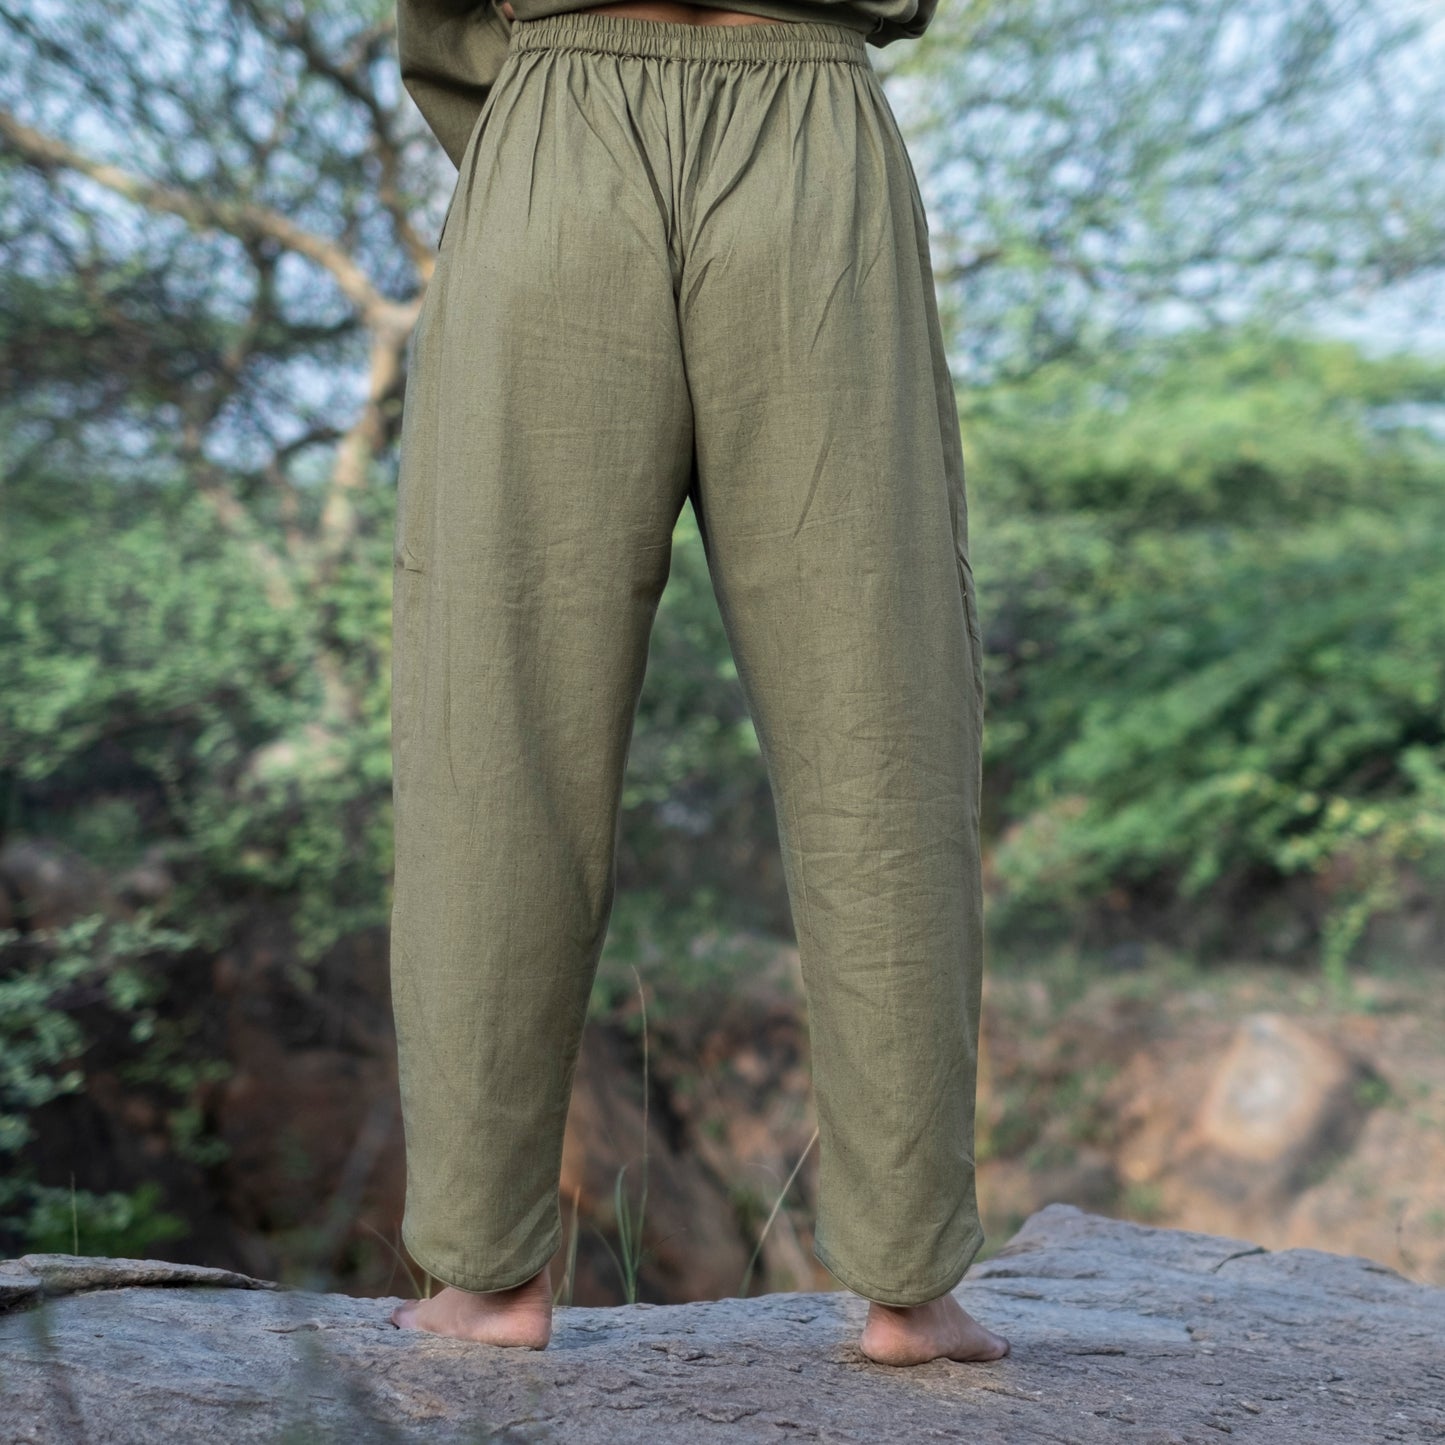 Surya Yoga Top and Pant Set Green